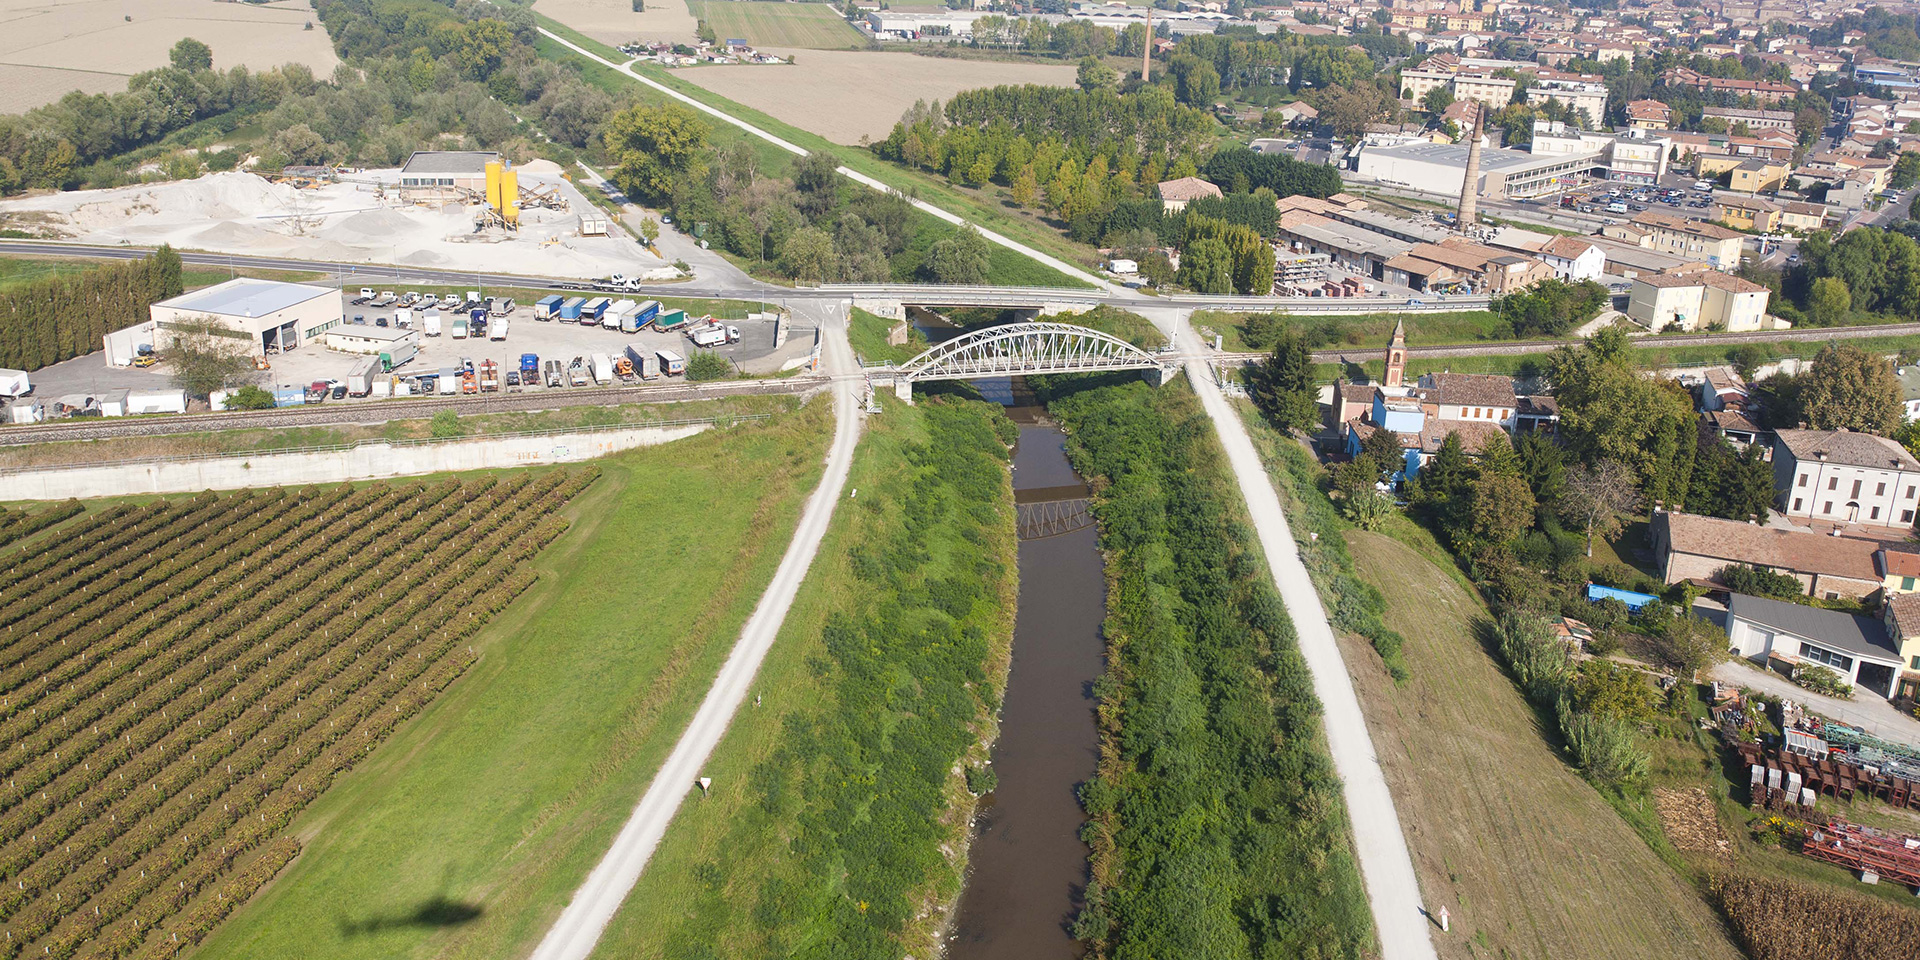 Adeguamento e rialzo ponti del Baccanello a Guastalla, Binini Partners, Società di architettura e ingegneria